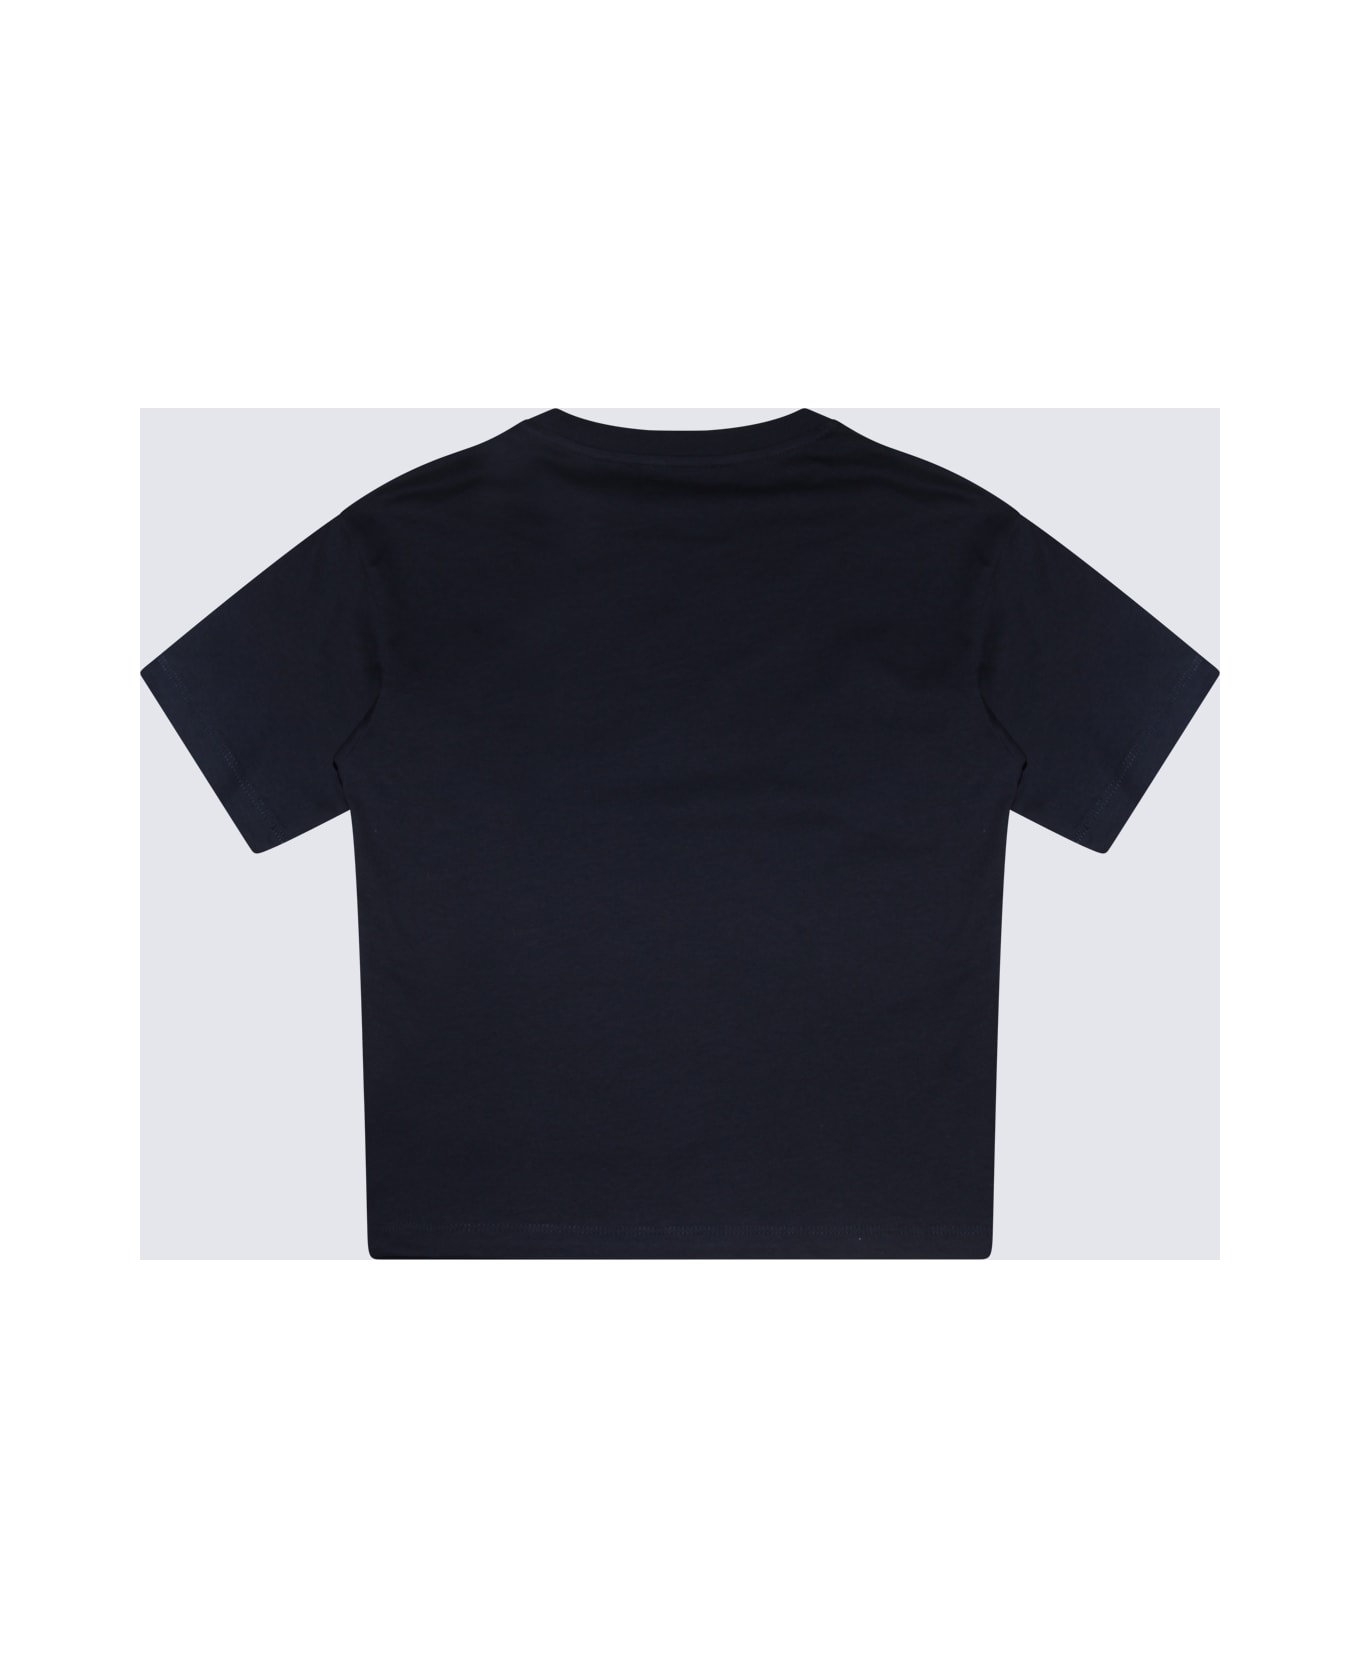 Balmain Navy Blue And White Cotton T-shirt - AIR FORCE BLUE